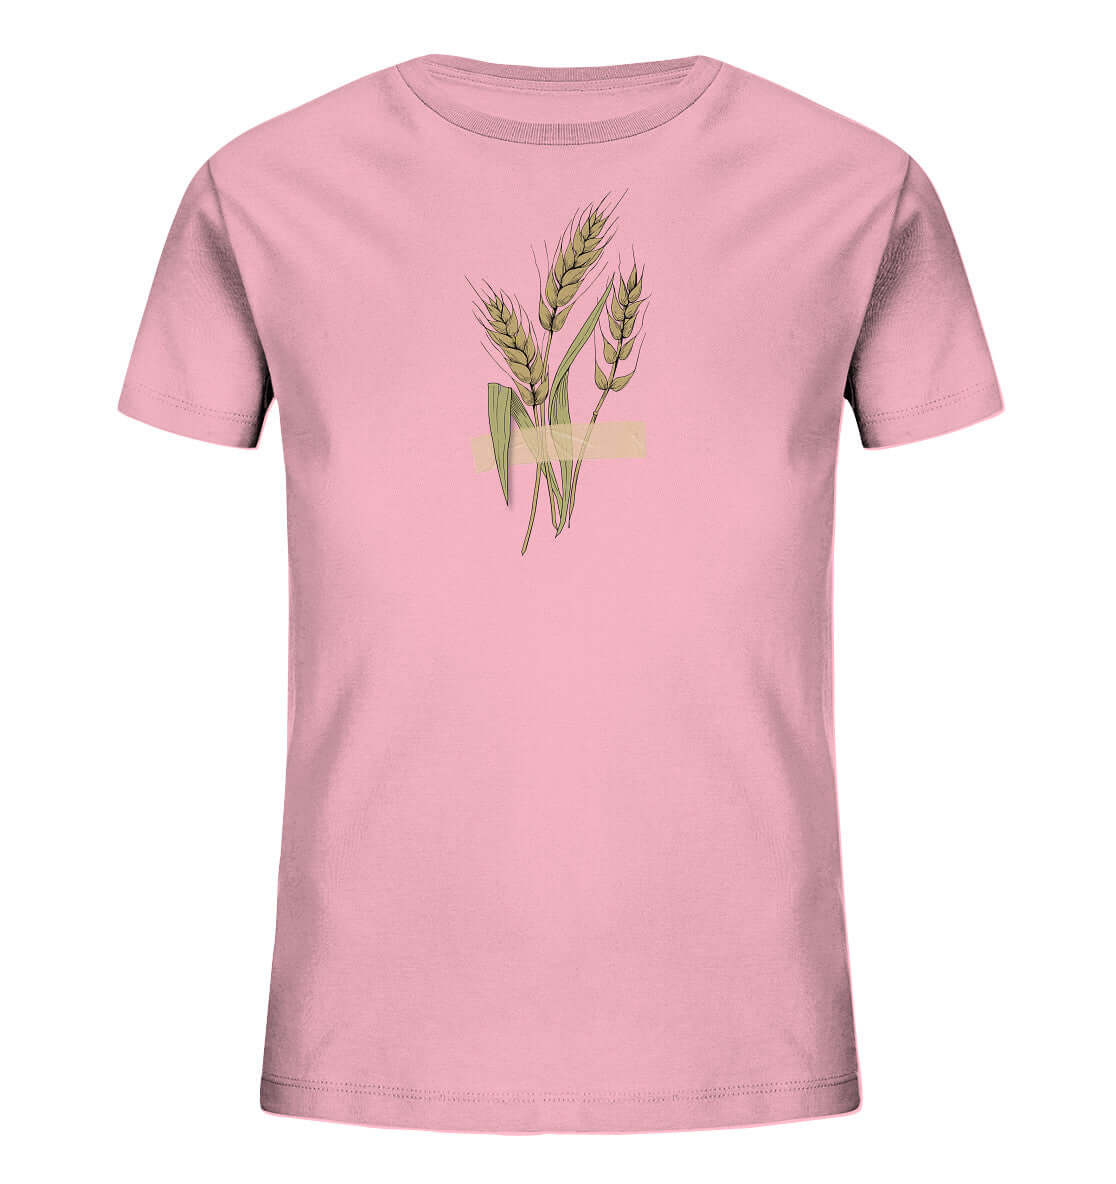 Kinder Shirt Ähre festgeklebt Agrar Acker Weizen Landwirt Shirt Landwirtschaft Dorfkind Dorfkram®